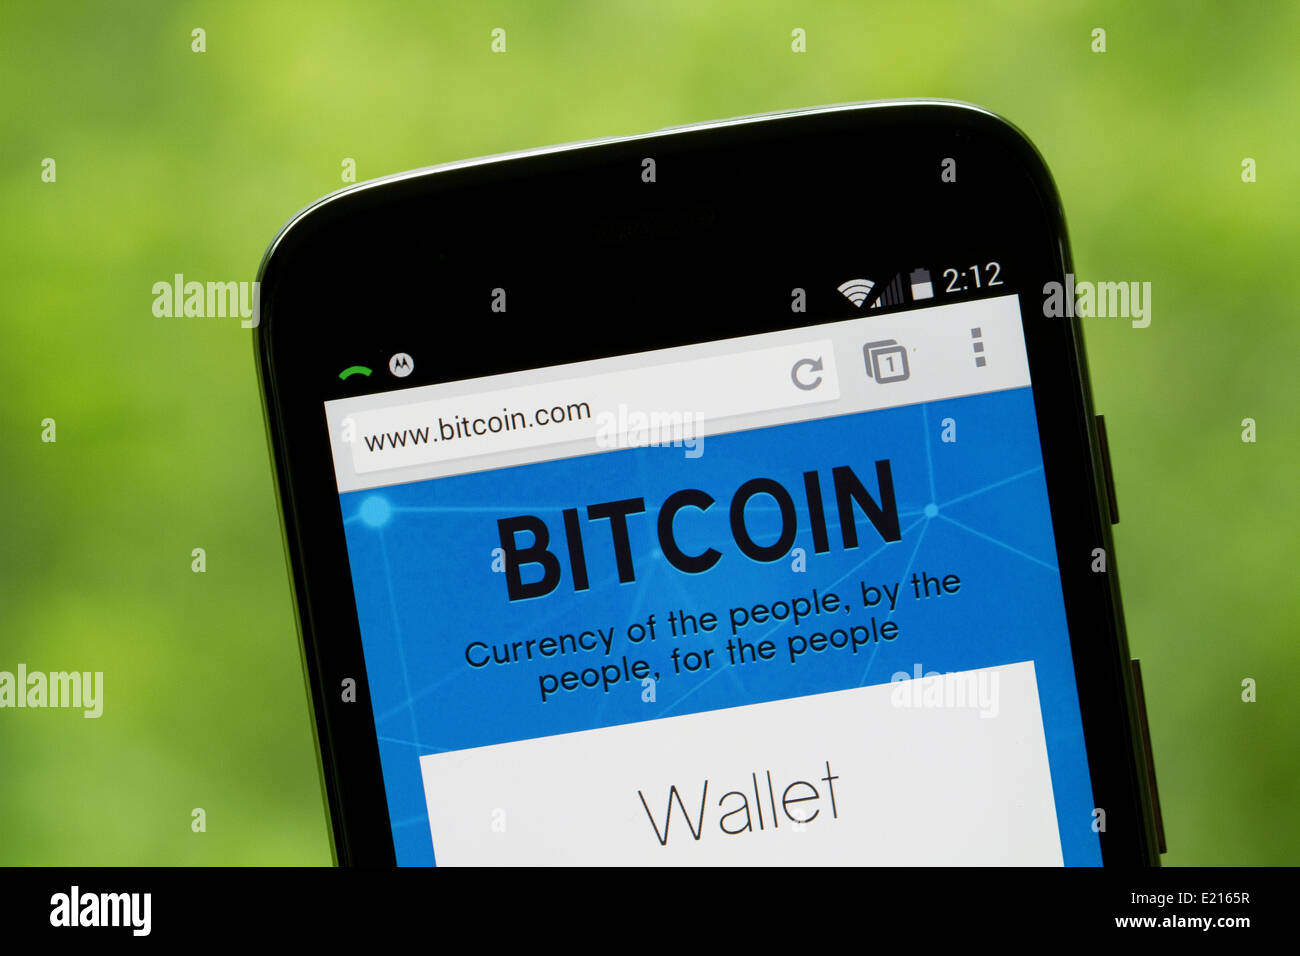 Bitcoin sito web visualizzato sullo schermo di un Motorola, Moto G cellulare, telefono cellulare. Foto Stock